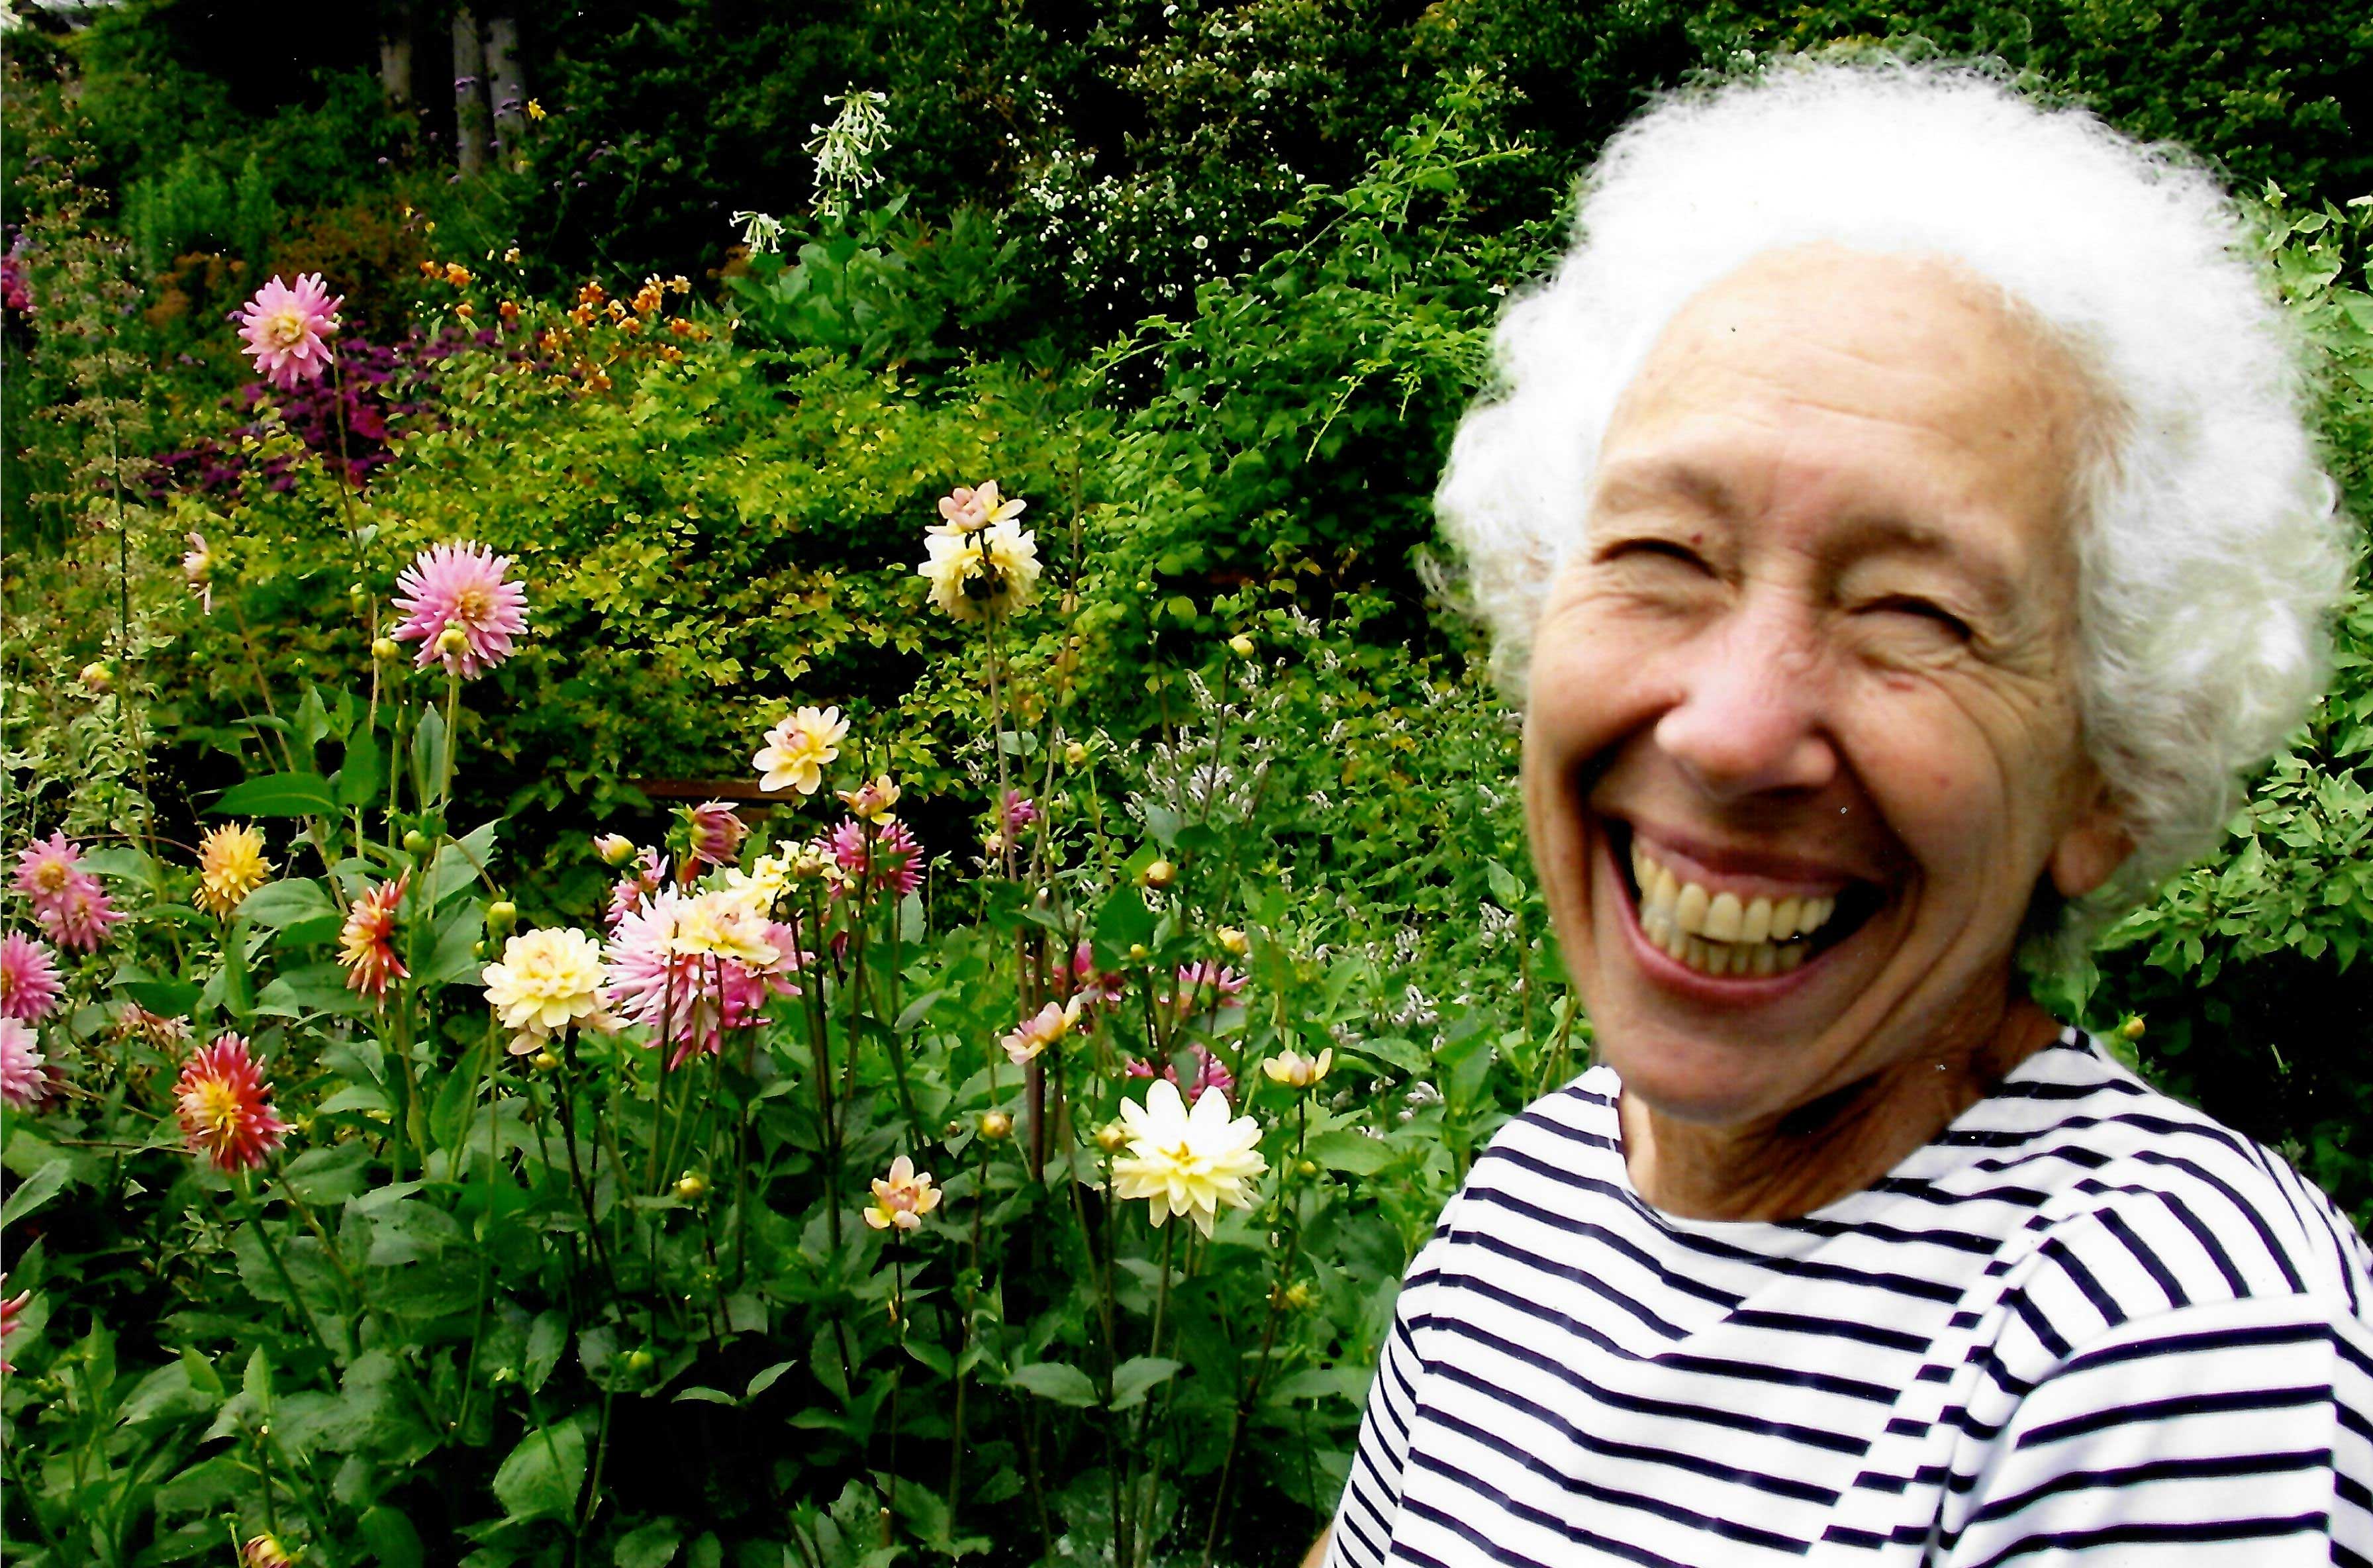 Ann in Streissguth Gardens, 2003